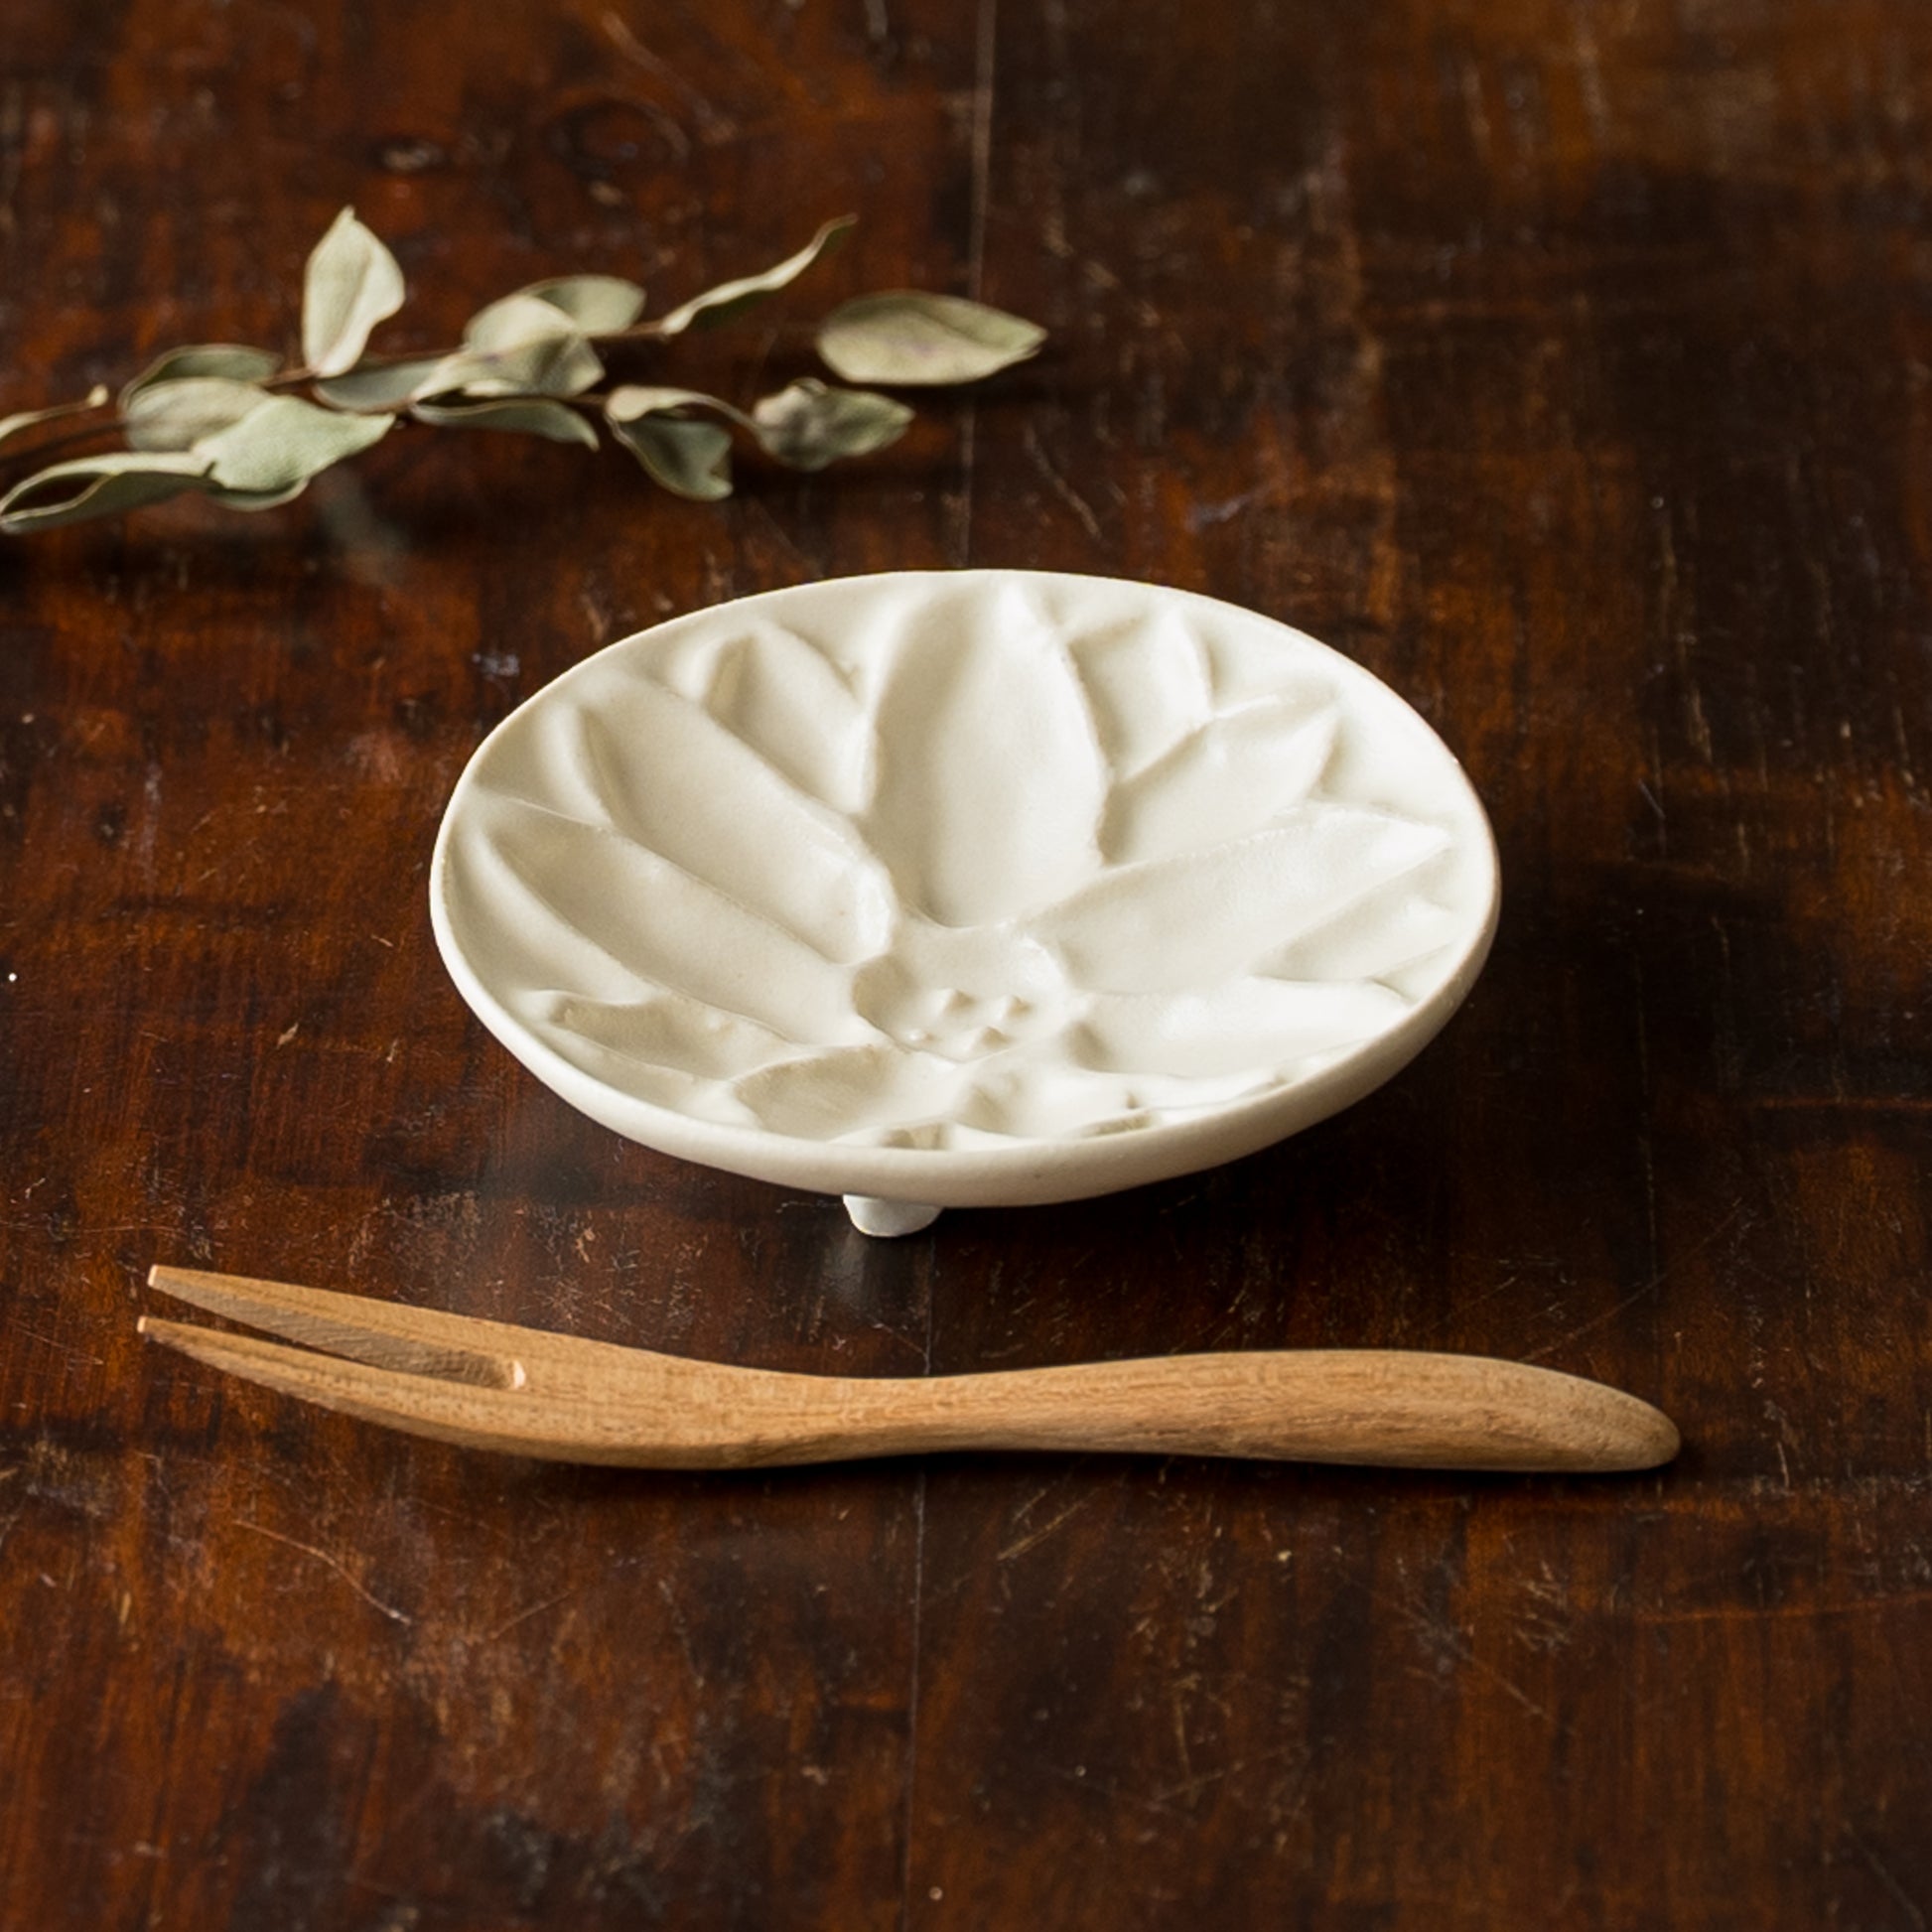 バターやジャムなどの載せるとおしゃれになるyoshida potteryの豆皿